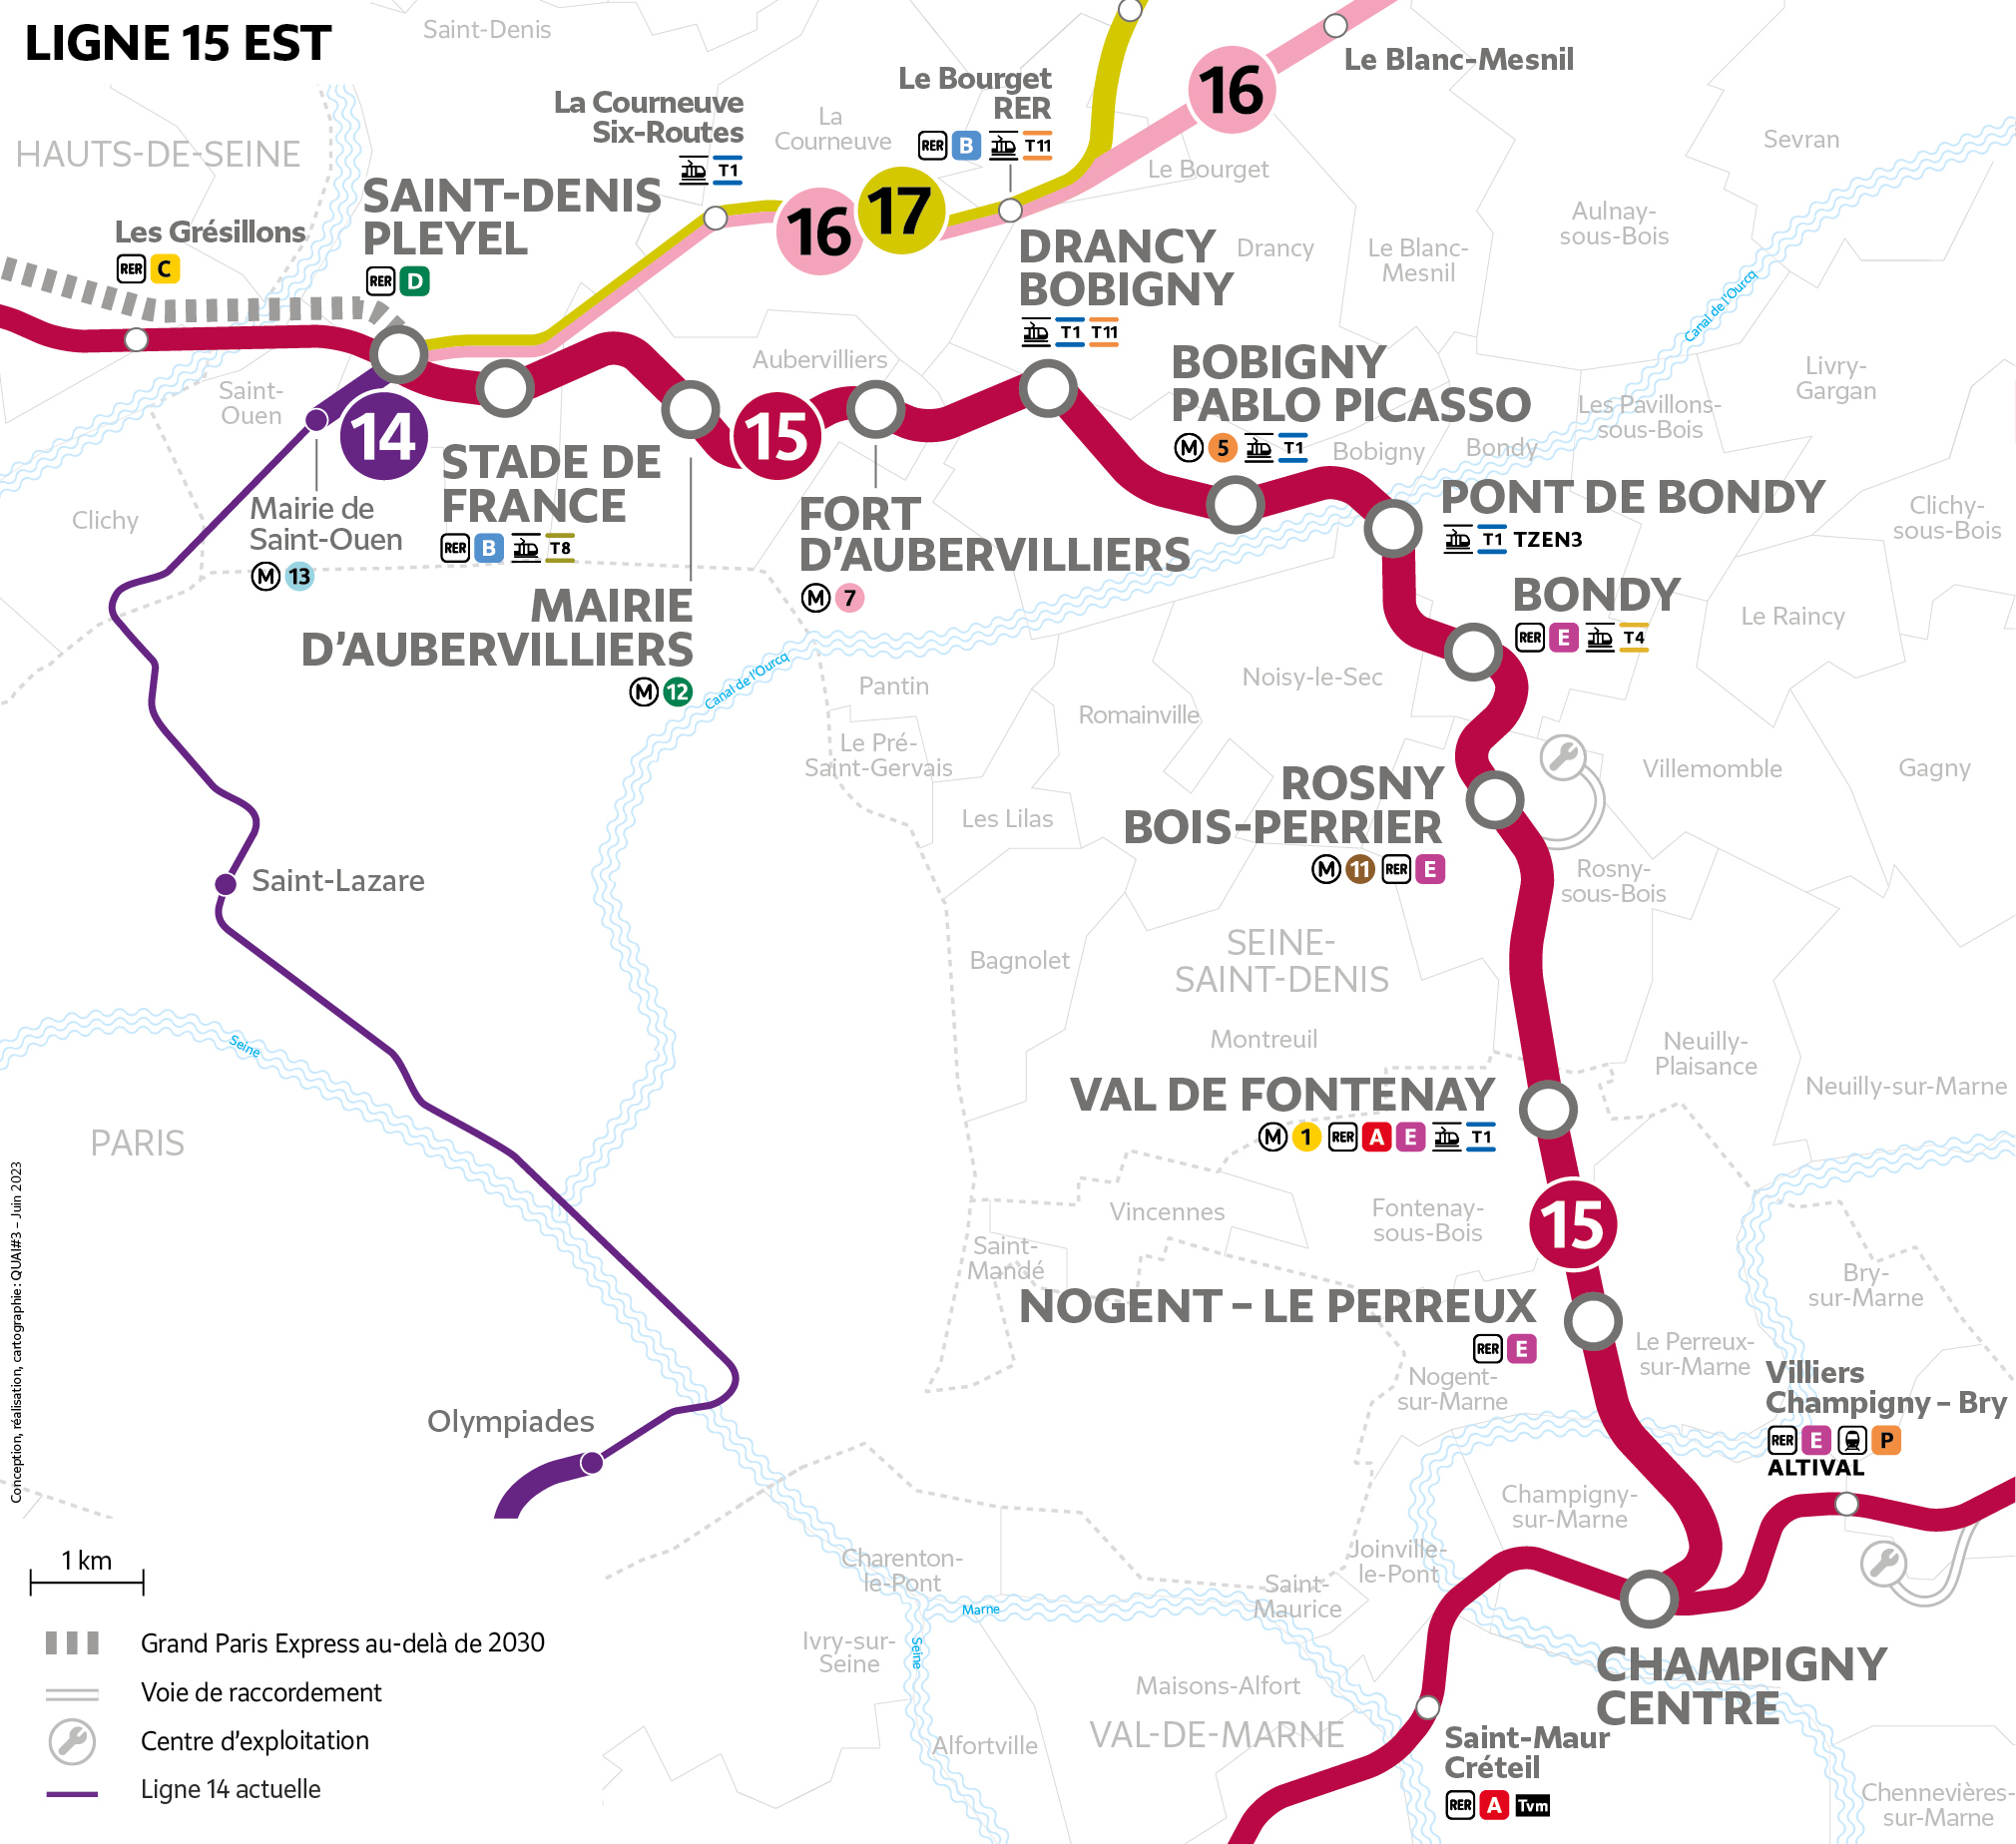 Line M15 East map (Photo: SGP)